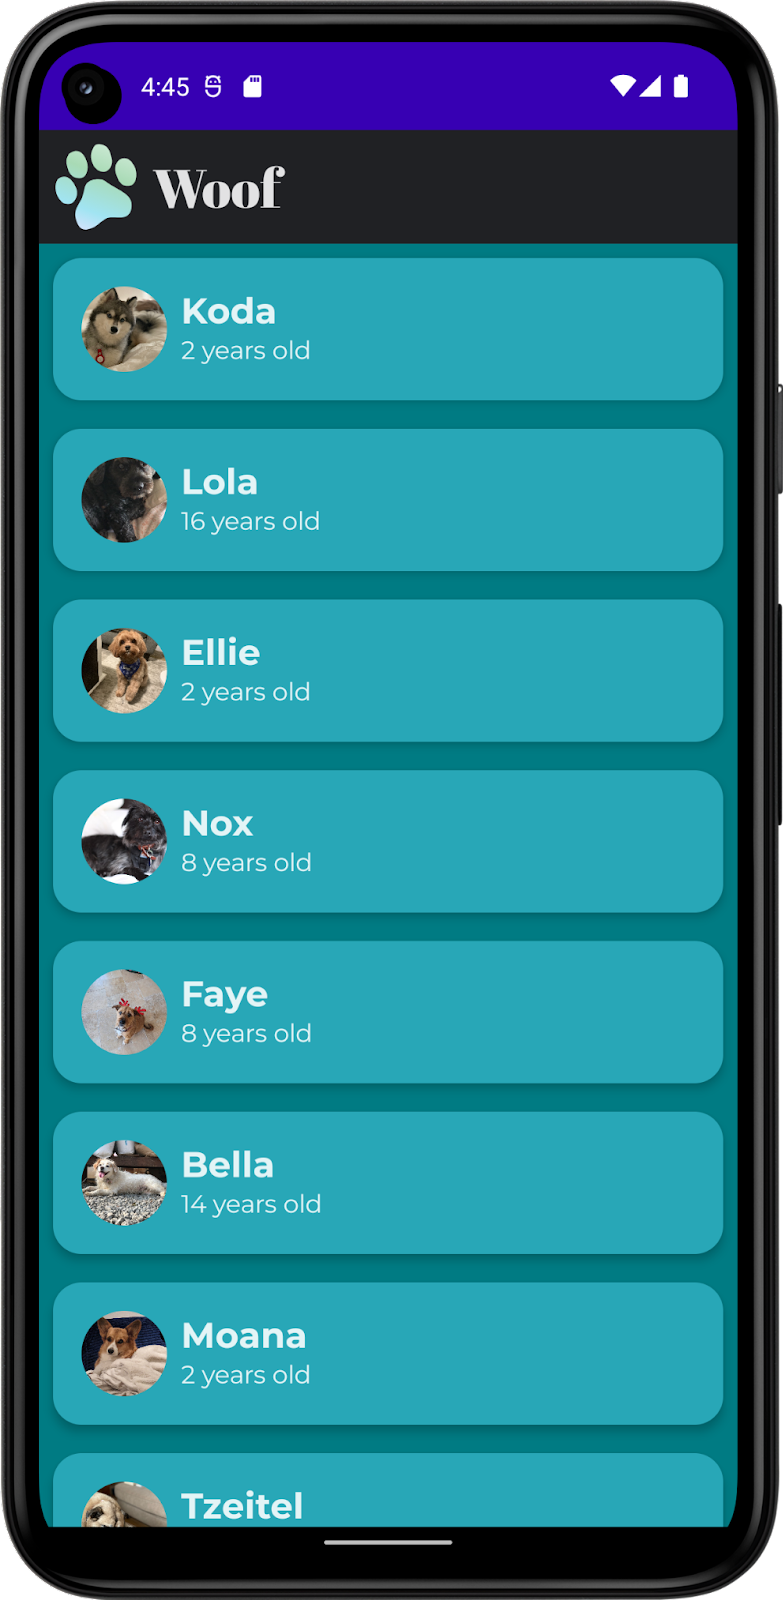 Esta imagem mostra um app com uma lista de cachorros, incluindo os nomes, fotos e idades deles. Ele inclui cores, formas e tipografia personalizadas, além de uma barra na parte de cima. O app sendo mostrado no modo escuro.